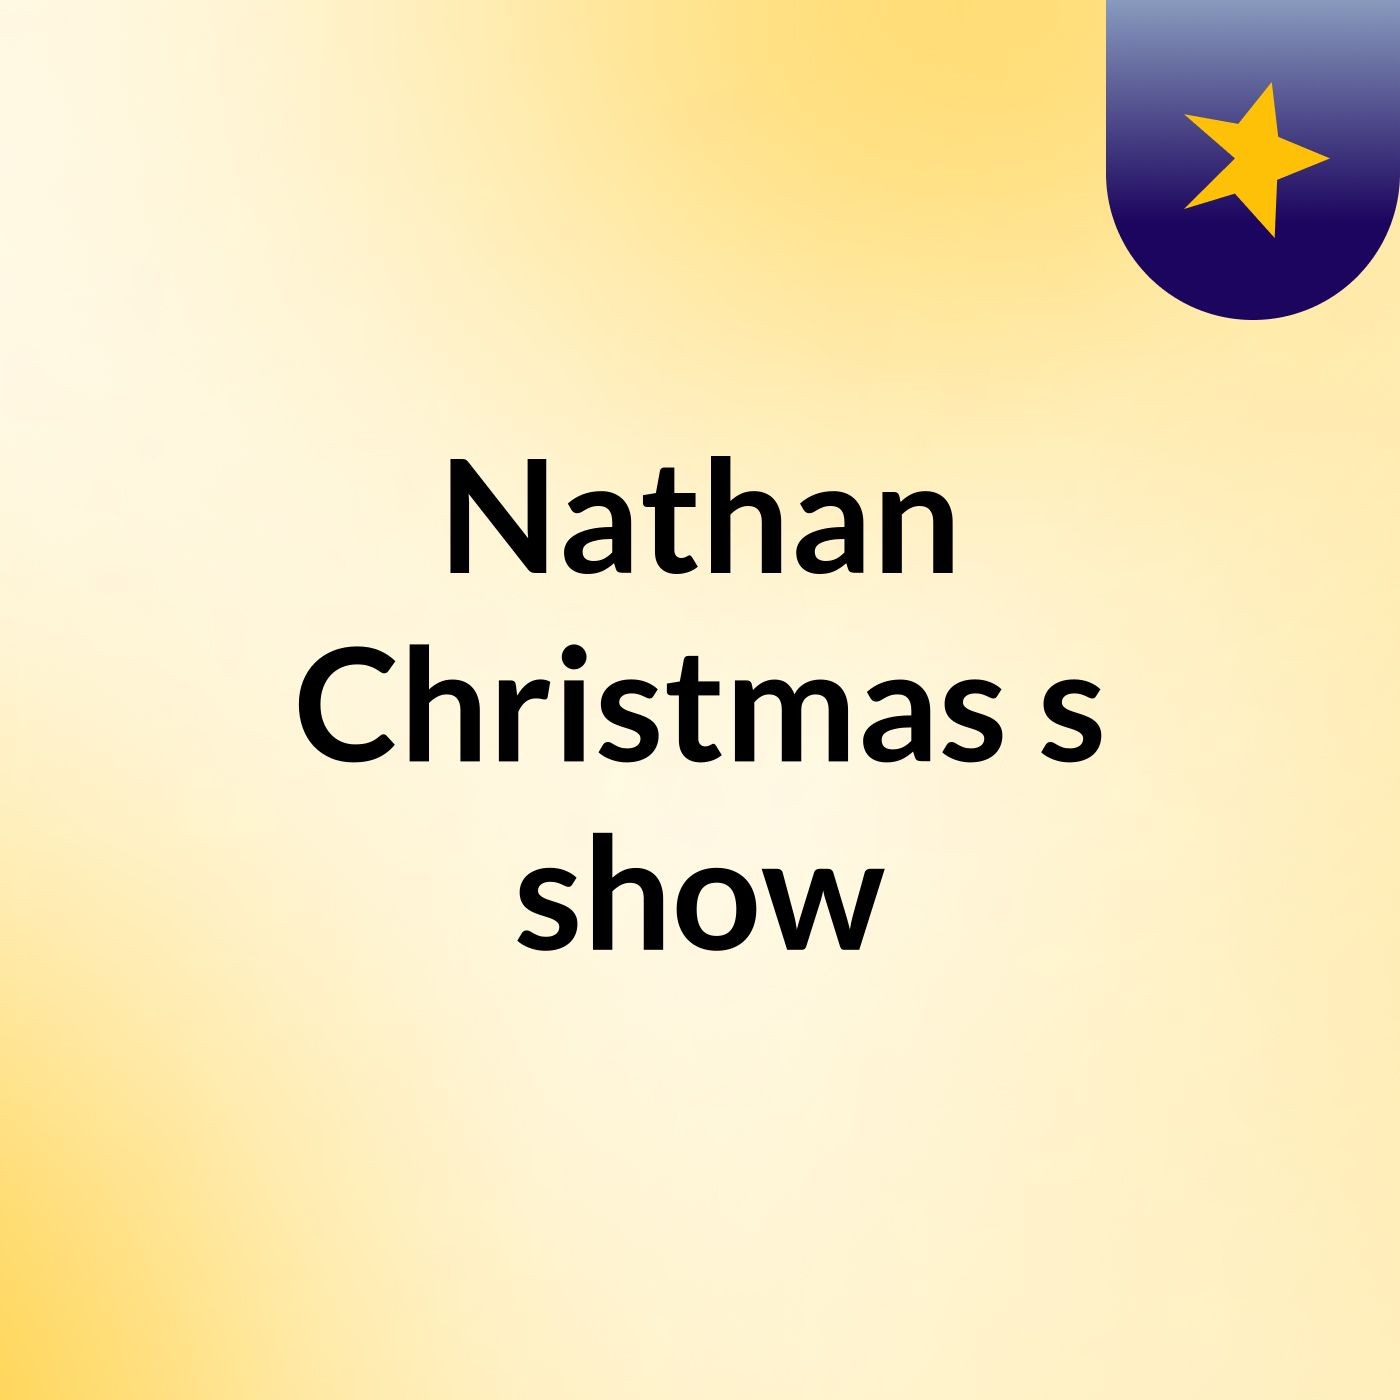 Nathan Christmas's show